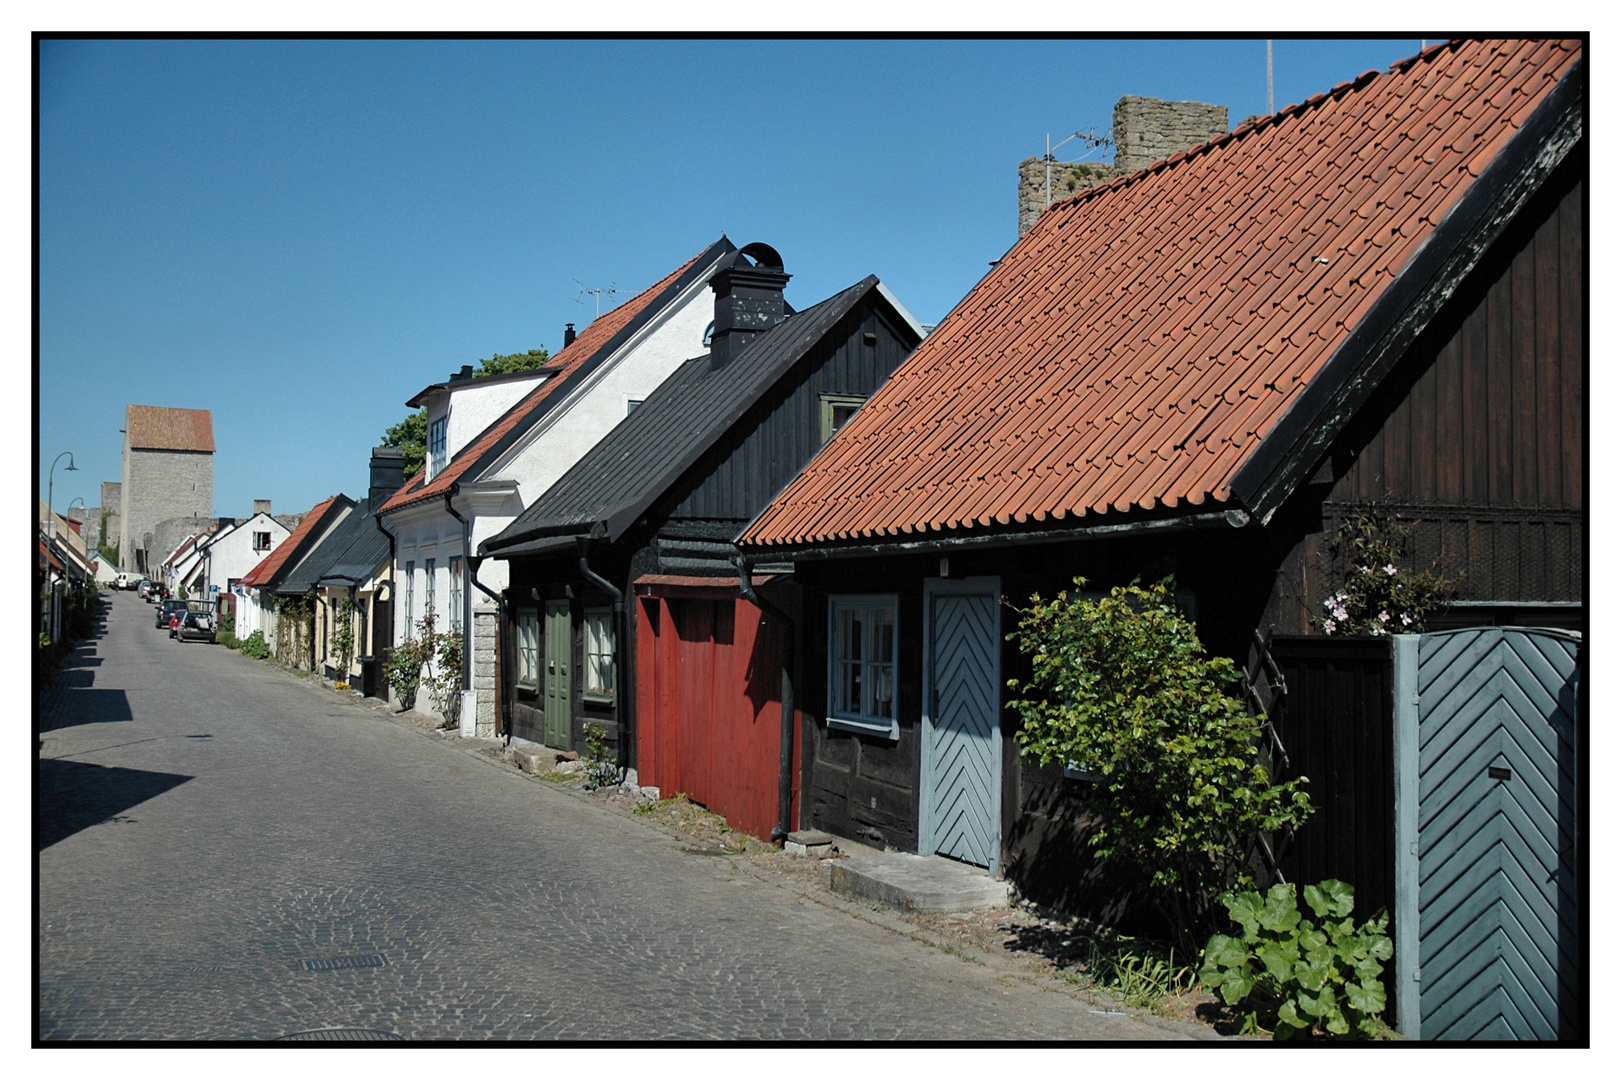 Strasse in Visby / Gotland